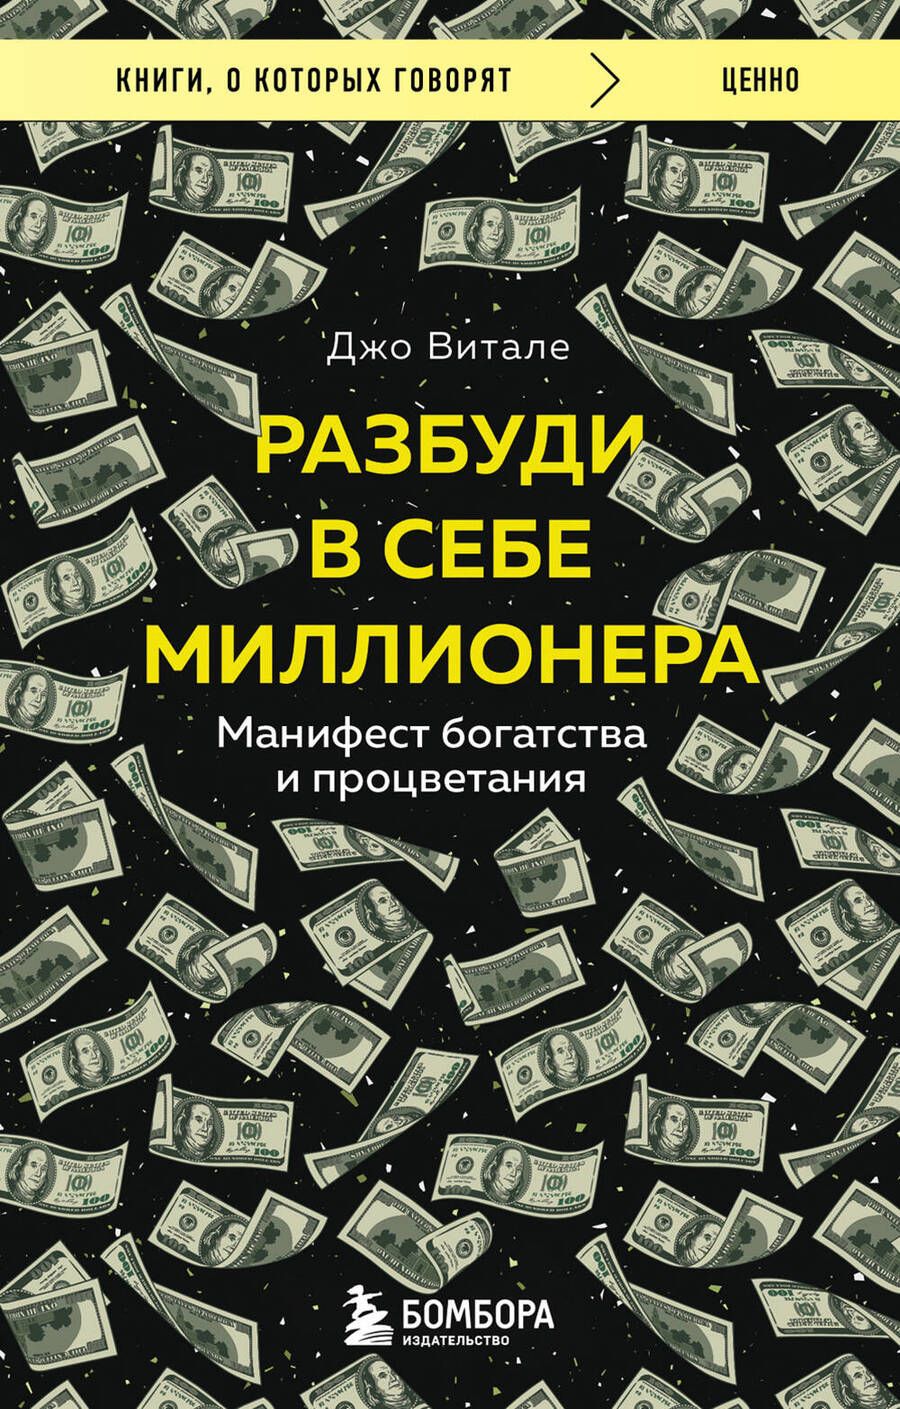 Обложка книги "Витале: Разбуди в себе миллионера. Манифест богатства и процветания"